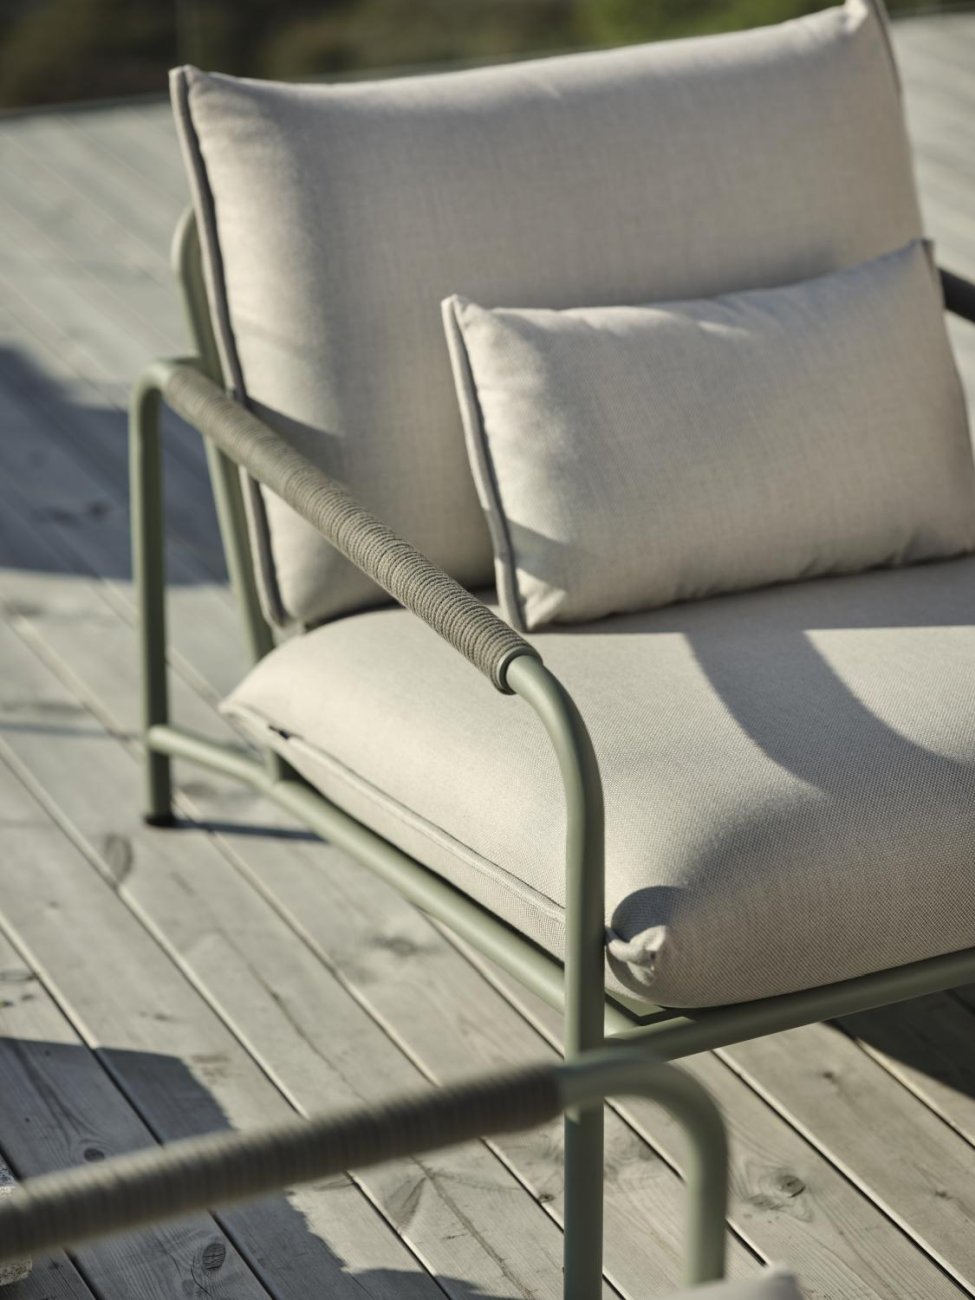 Der Gartensessel Lerberget überzeugt mit seinem modernen Design. Gefertigt wurde er aus Stoff, welcher einen grauen Farbton besitzt. Das Gestell ist aus Metall und hat eine grüne Farbe. Die Sitzhöhe des Sessels beträgt 42 cm.